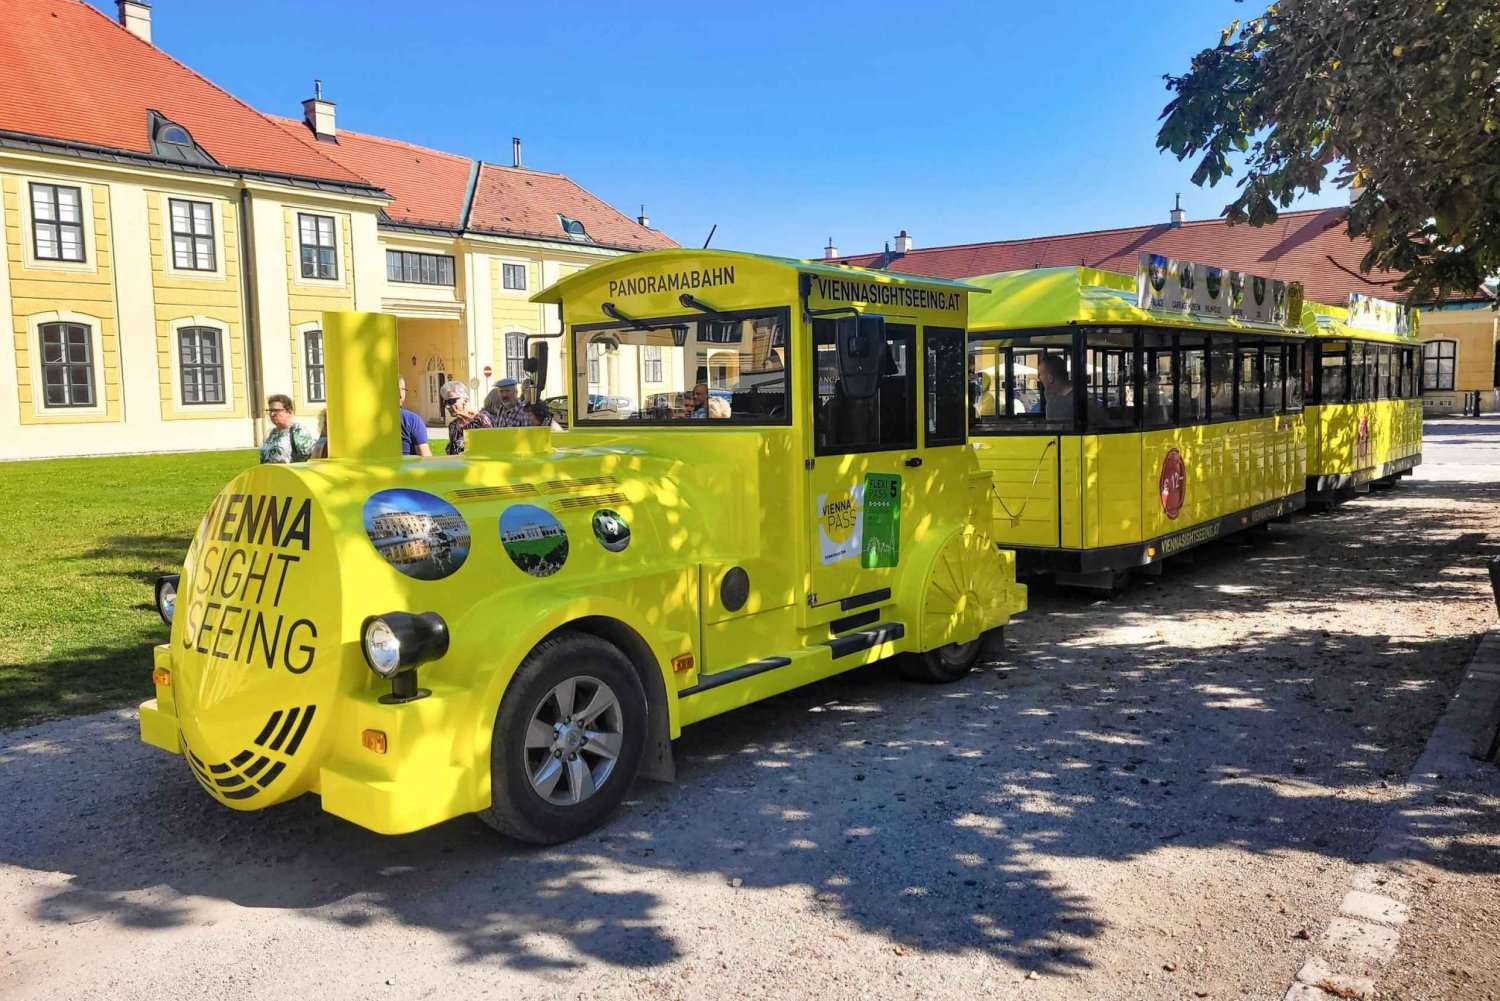 Vienna: treno panoramico per il Castello di Schönbrunn